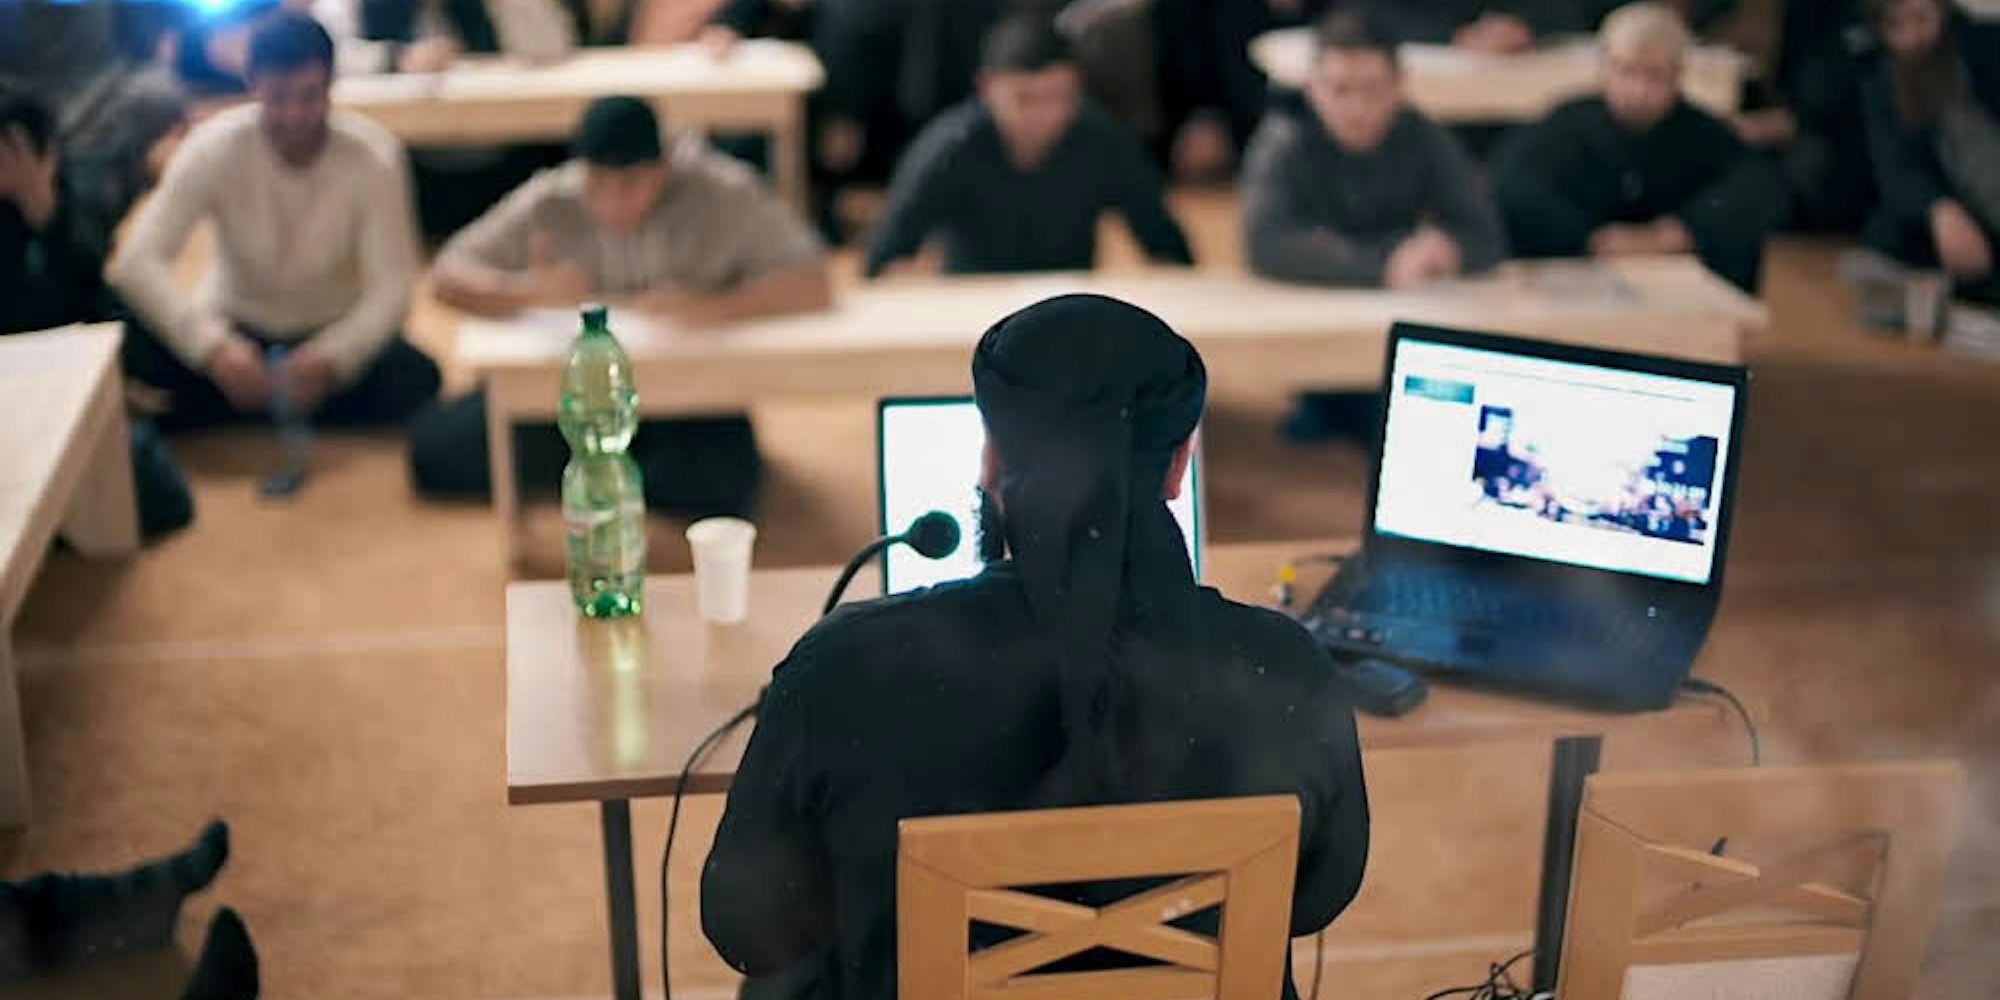 Der Screenshot von Al Manhaj Media zeigt Abdulaziz Abdullah Abdullah, alias Abu Walaa, bei einer Predigt. Er ist seit einigen Jahren einer der einflussreichsten Prediger der radikalen deutschen Salafisten-Szene. Im November 2016 wurde er festgenommen.